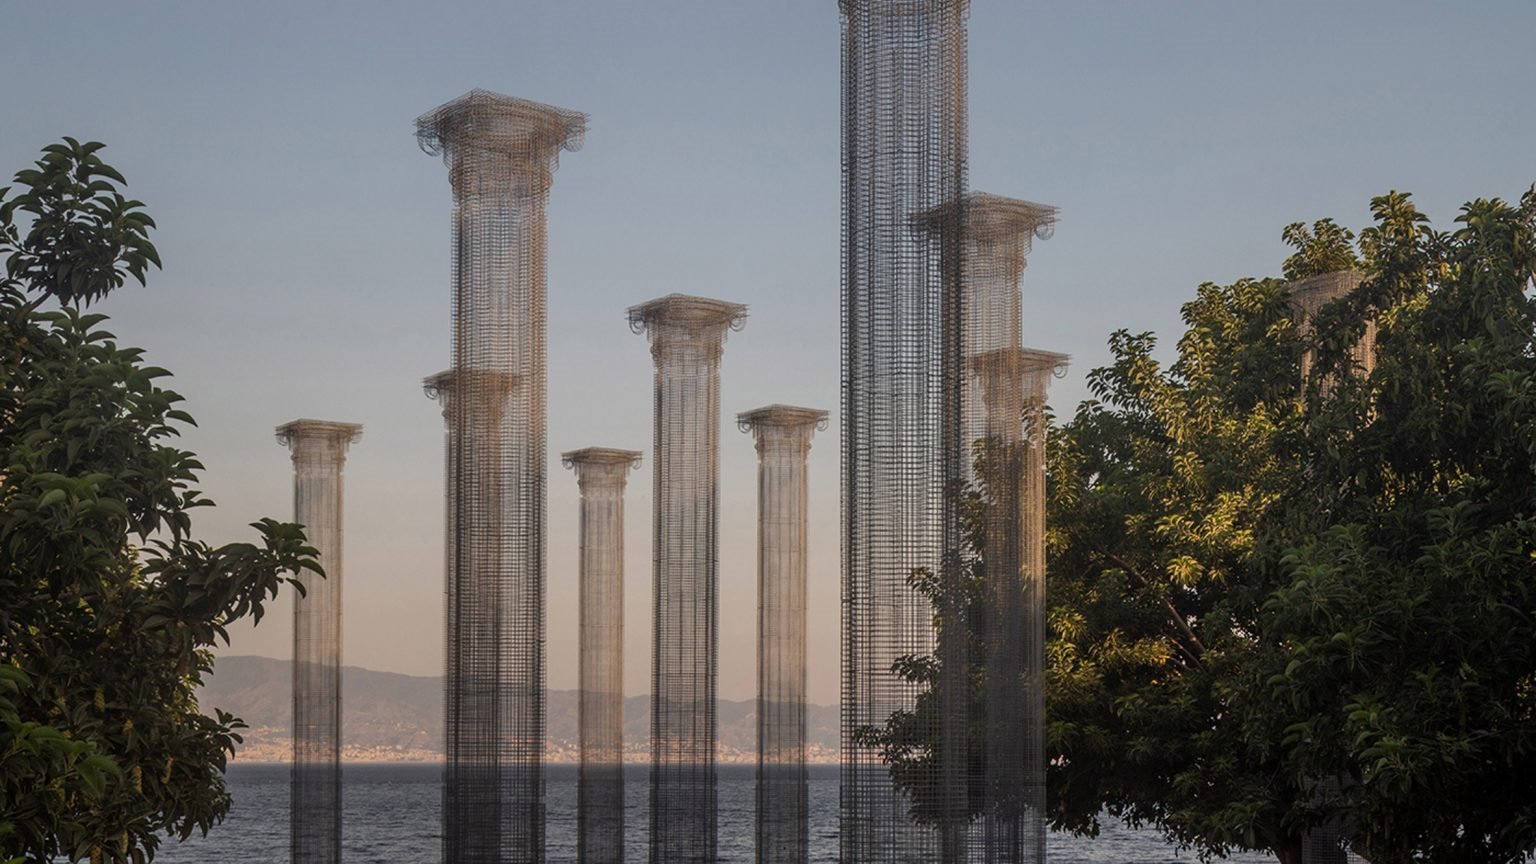 Instalacion artistica con columnas metalicas por Edoardo Tresoldi en la ciudad siciliana de Reggio Calabria